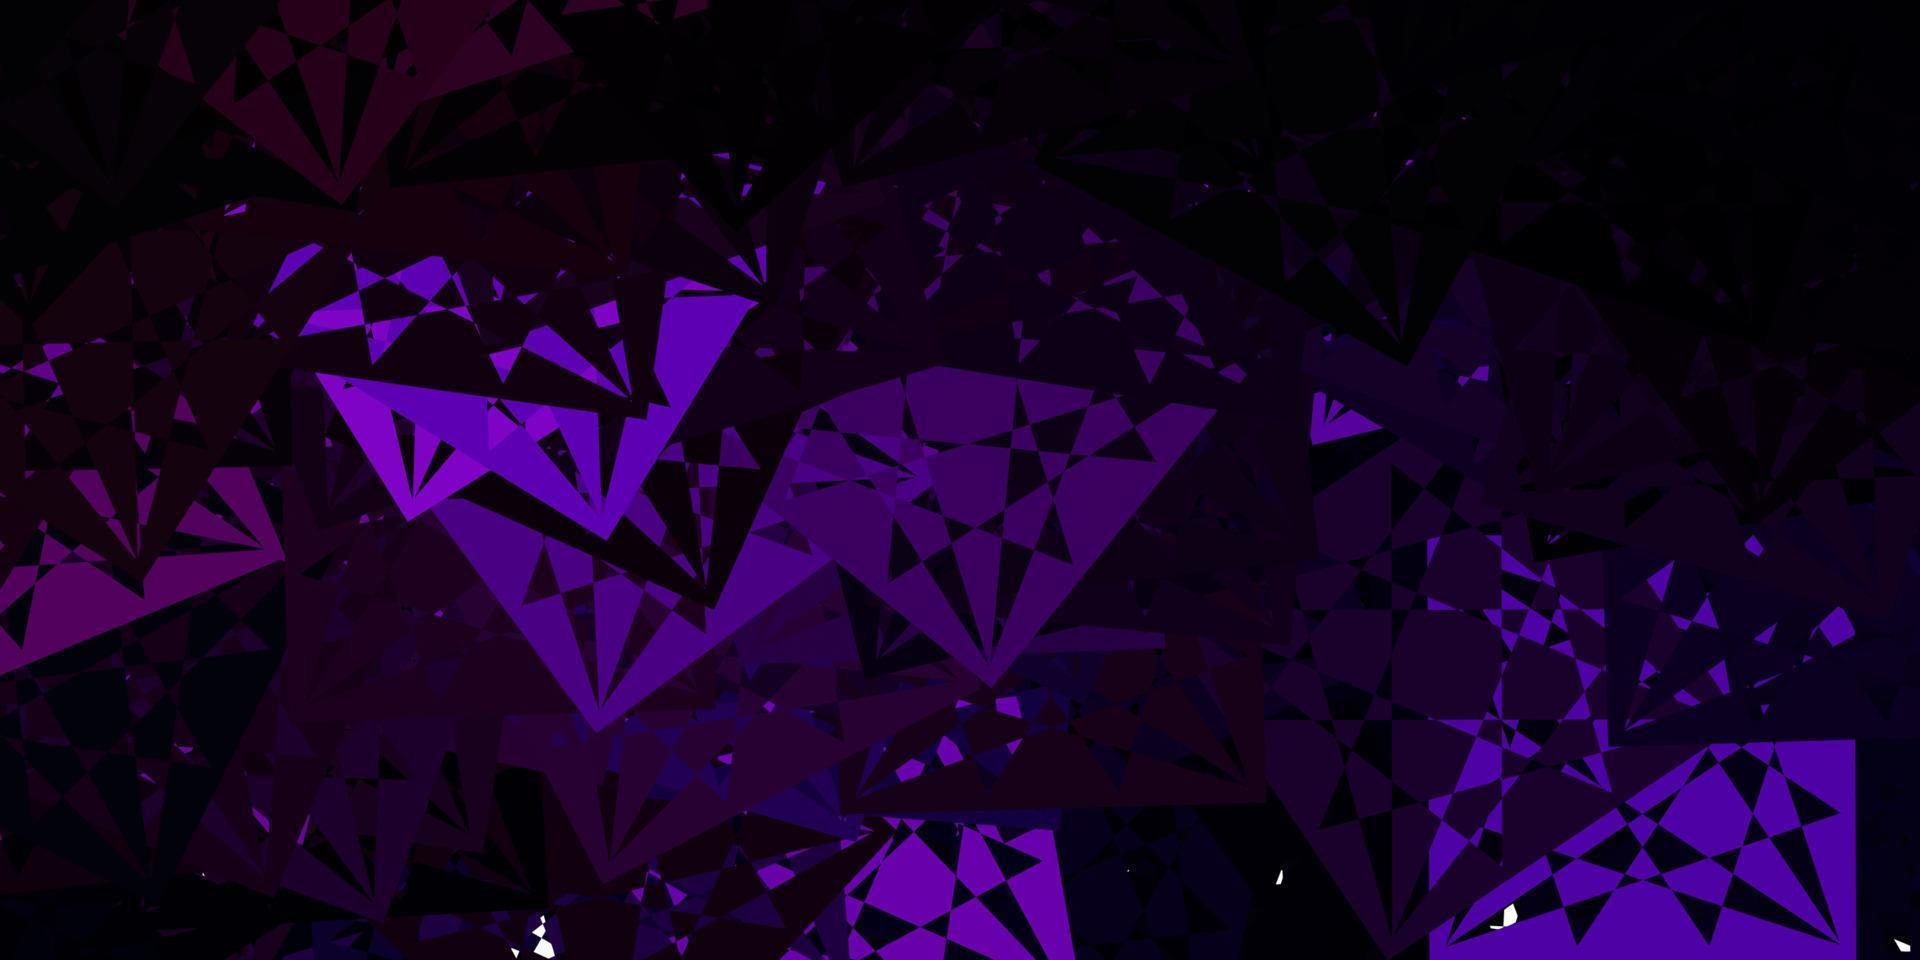 sfondo vettoriale viola scuro, rosa con triangoli.